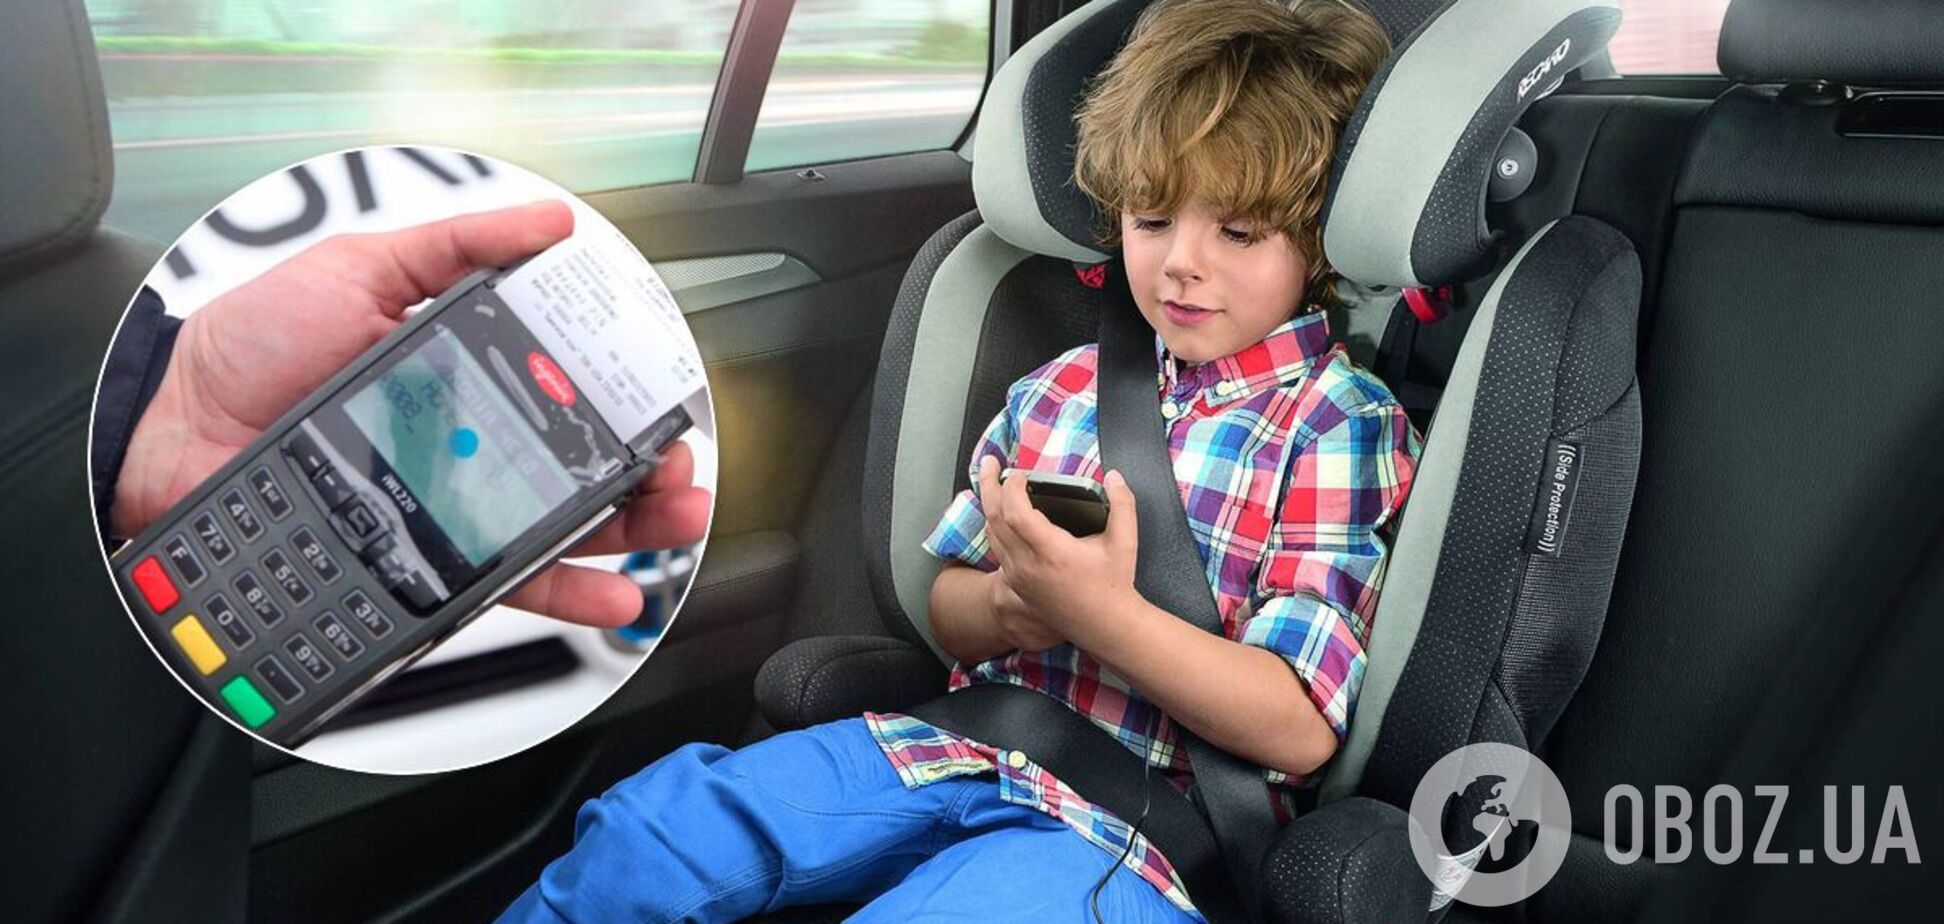 Перевозка детей в машине: какие существуют правила и штрафы за нарушения